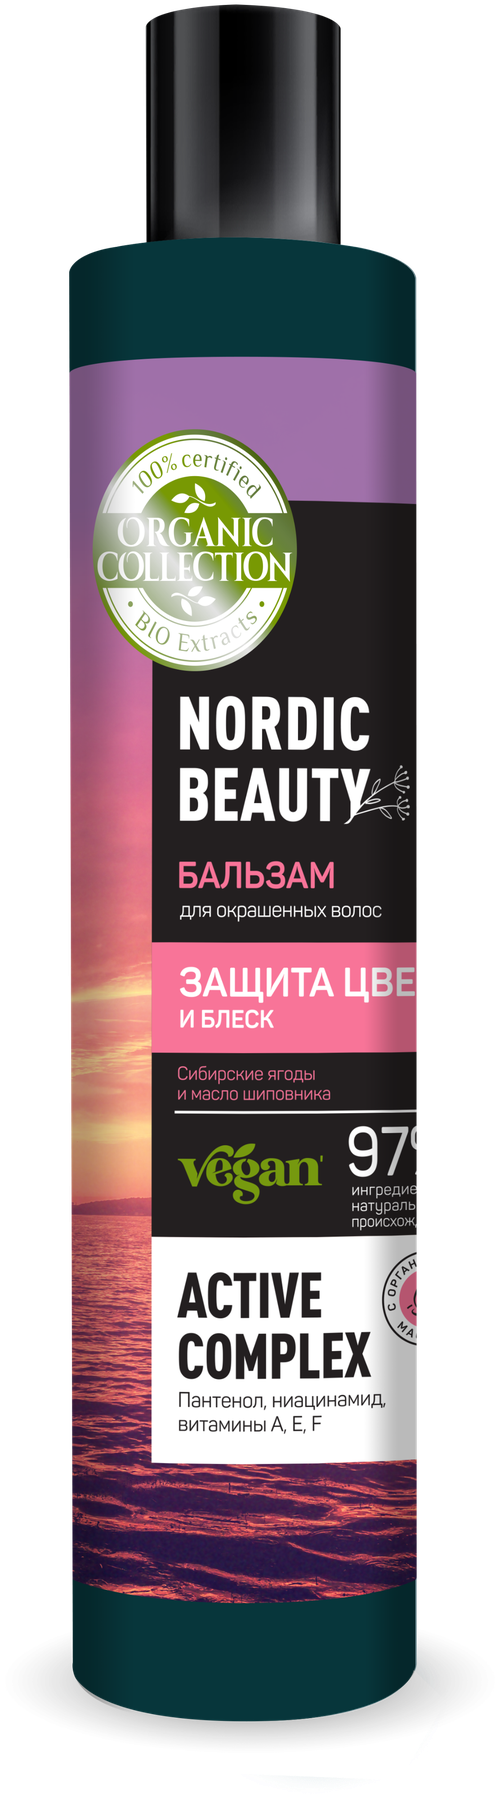 ORGANIC COLLECTION бальзам Nordic beauty для окрашенных волос защита цвета и блеск, 400 мл